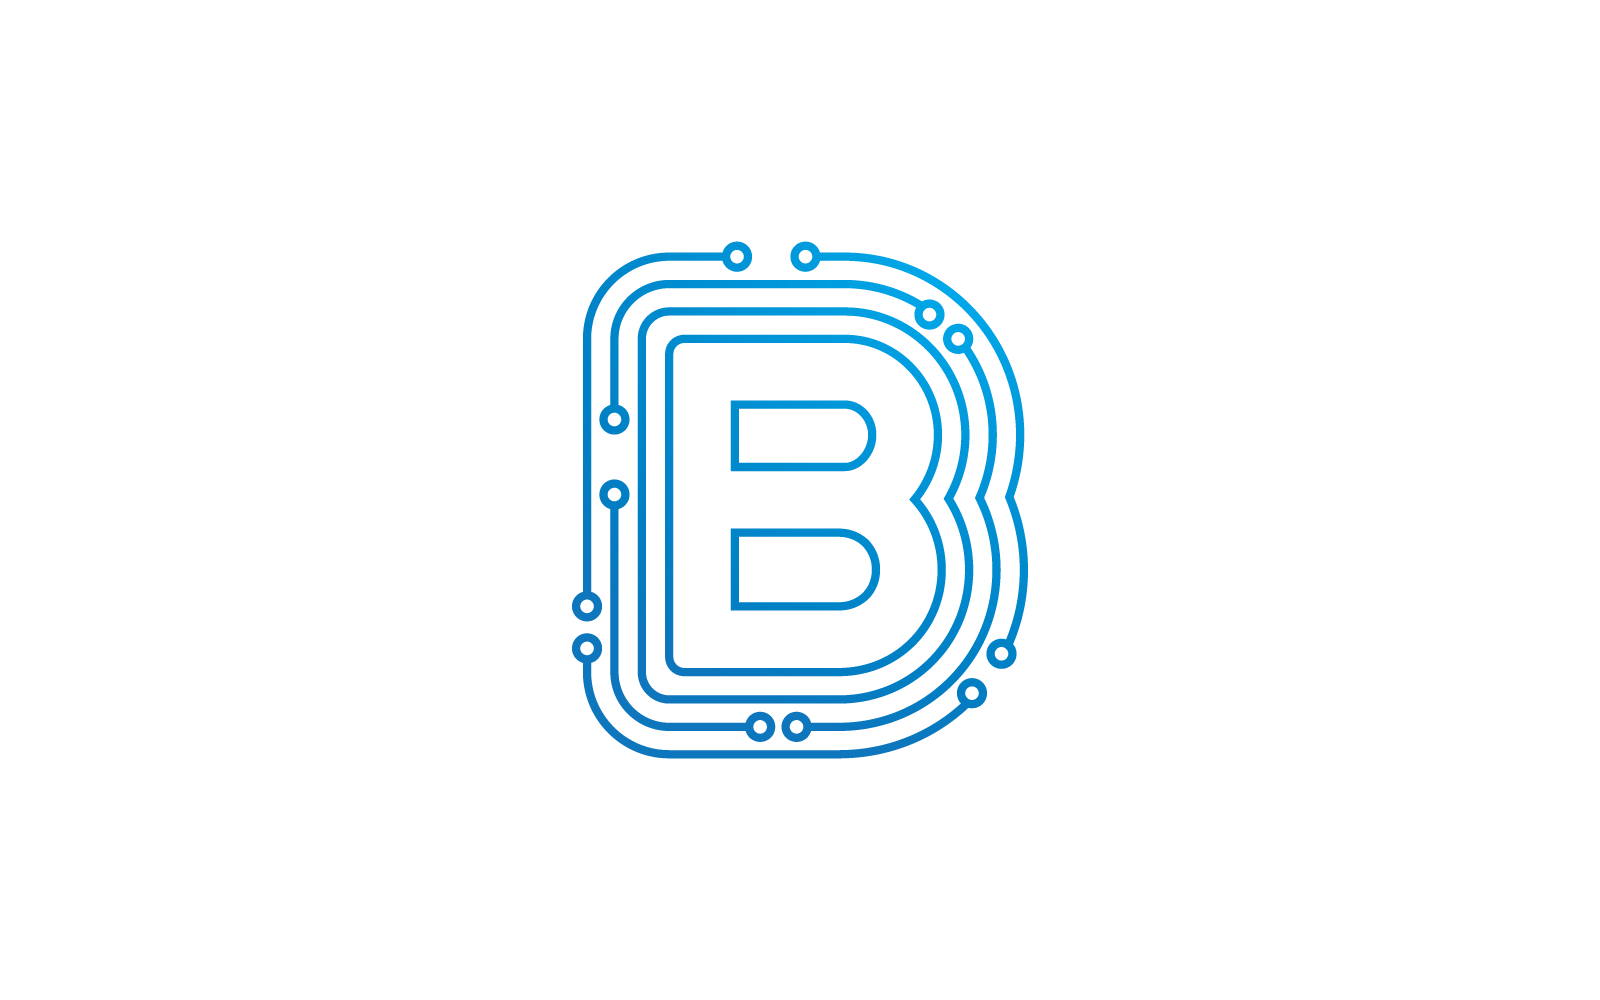 B 首字母电路技术插图徽标矢量模板